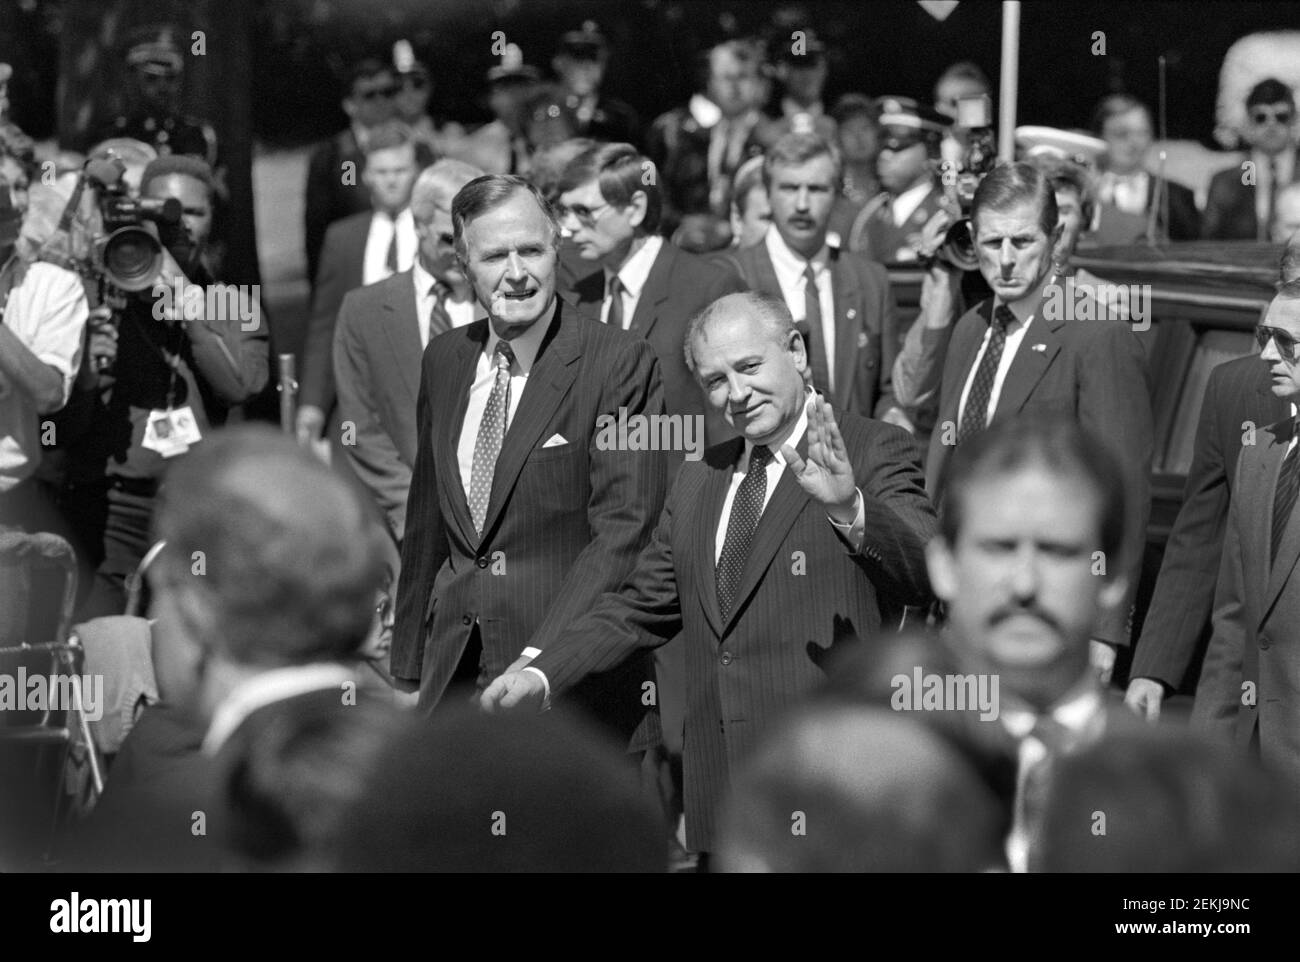 Cérémonie d'arrivée au sommet Union soviétique-États-Unis avec le président américain George H.W. Bush et le président soviétique Mikhaïl Gorbatchev, Washington, D.C., États-Unis, R. Michael Jenkins, 31 mai 1990 Banque D'Images